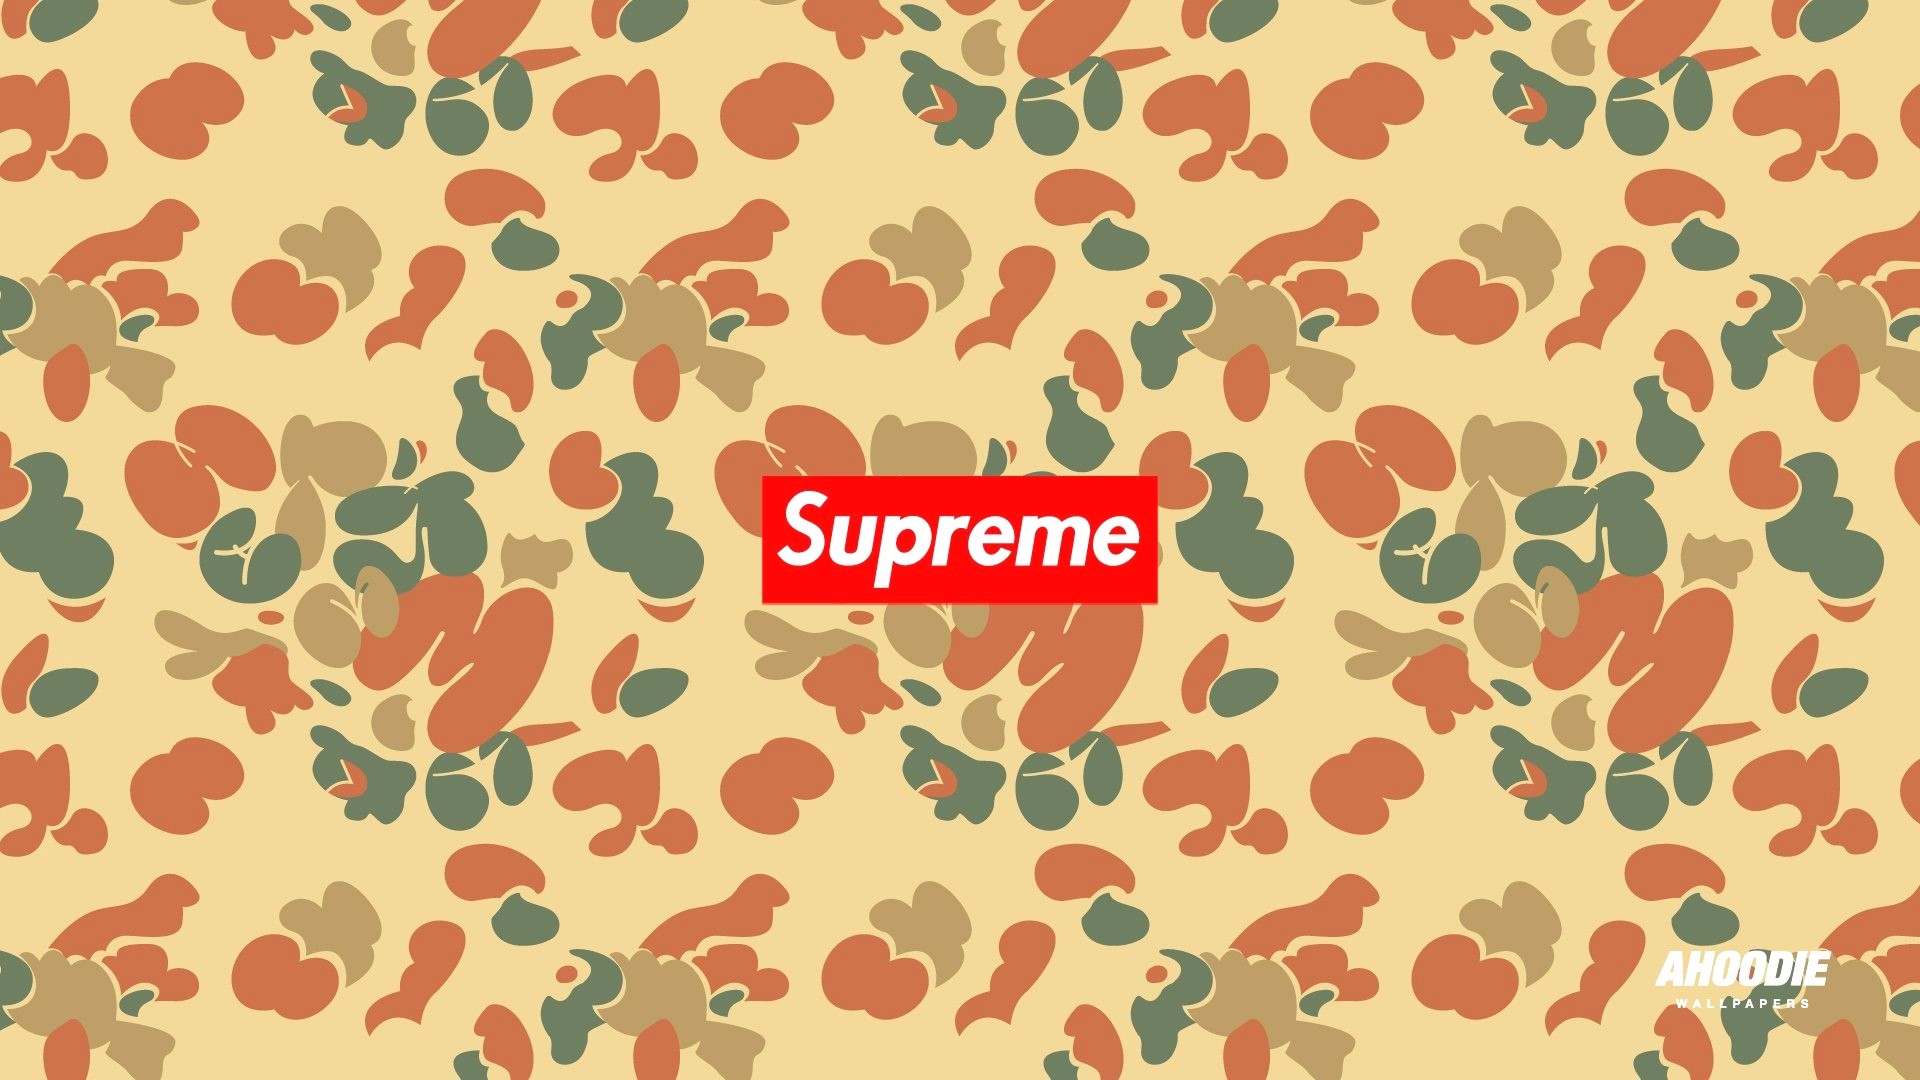 Supreme Bape Background